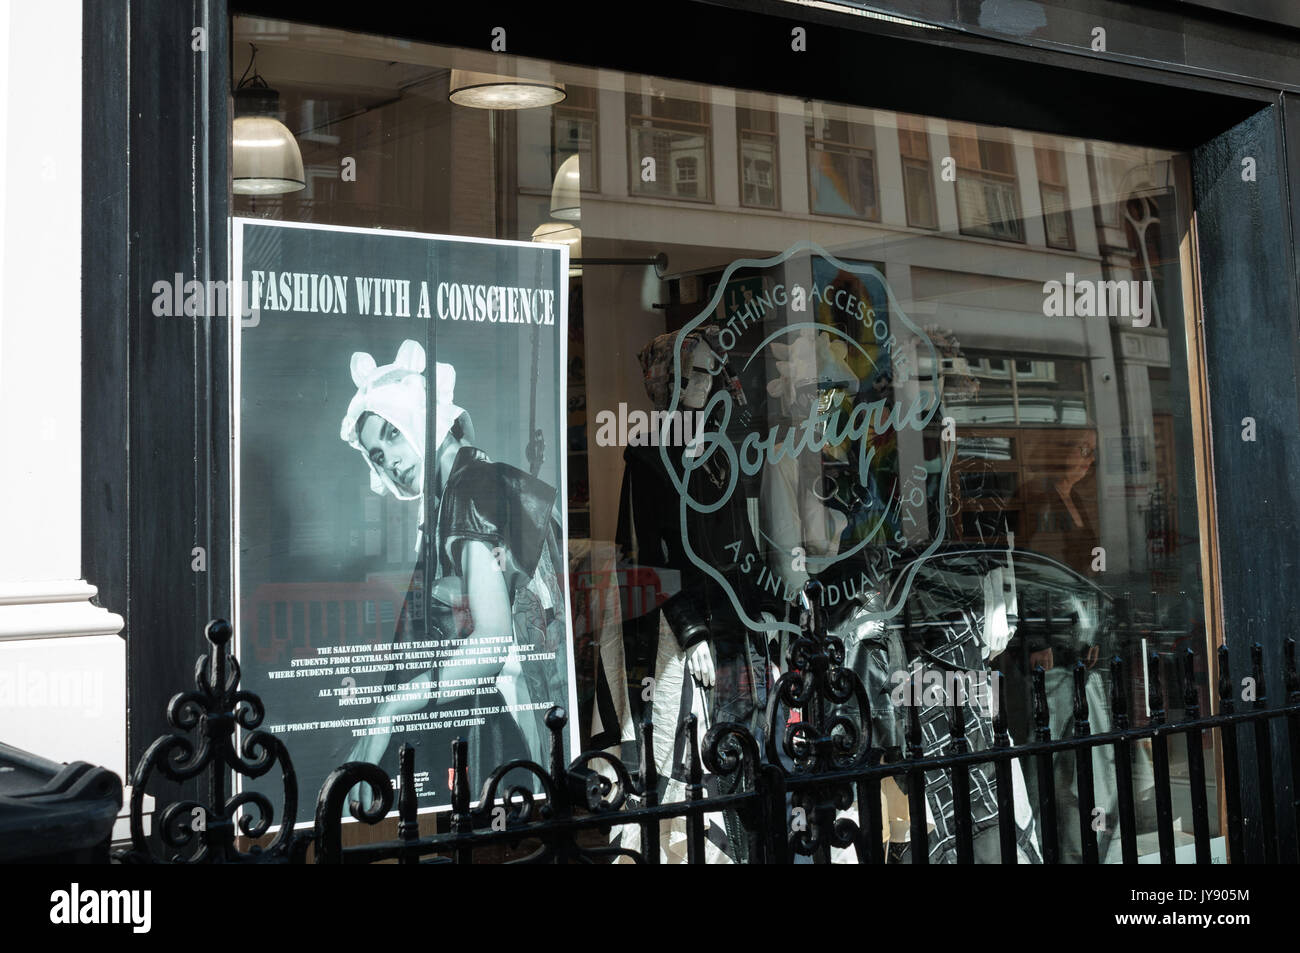 L'Armée du Salut Boutique Magasin de charité dans Princes Street, Mayfair, London UK. Accueille souvent des collections créées par les élèves à la Central St Martins. Banque D'Images